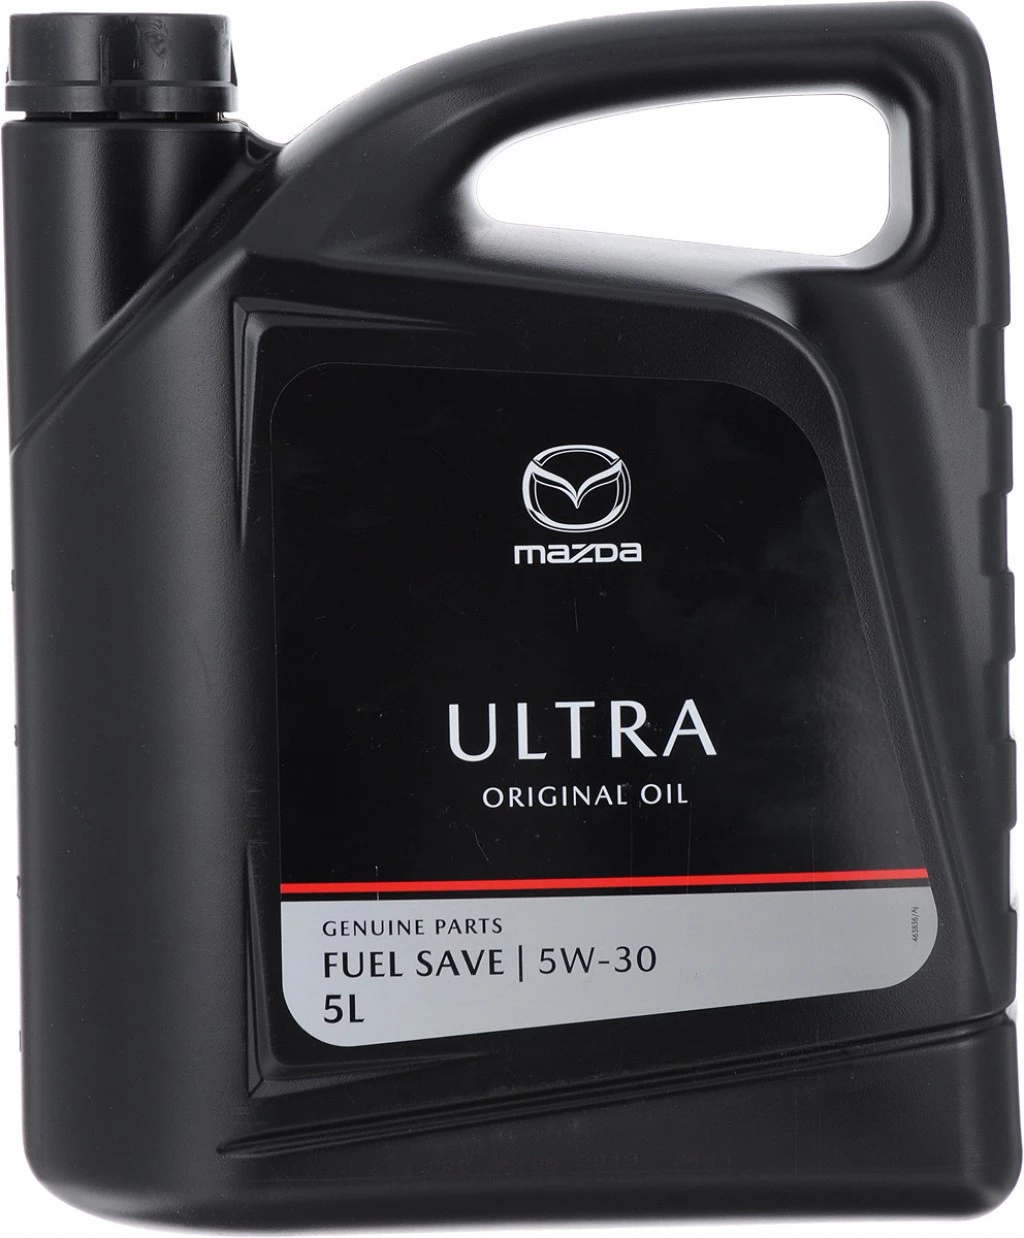 Обзор масла Mazda Original Oil Ultra 5W-30 – тест плюсы минусы отзывы характеристики